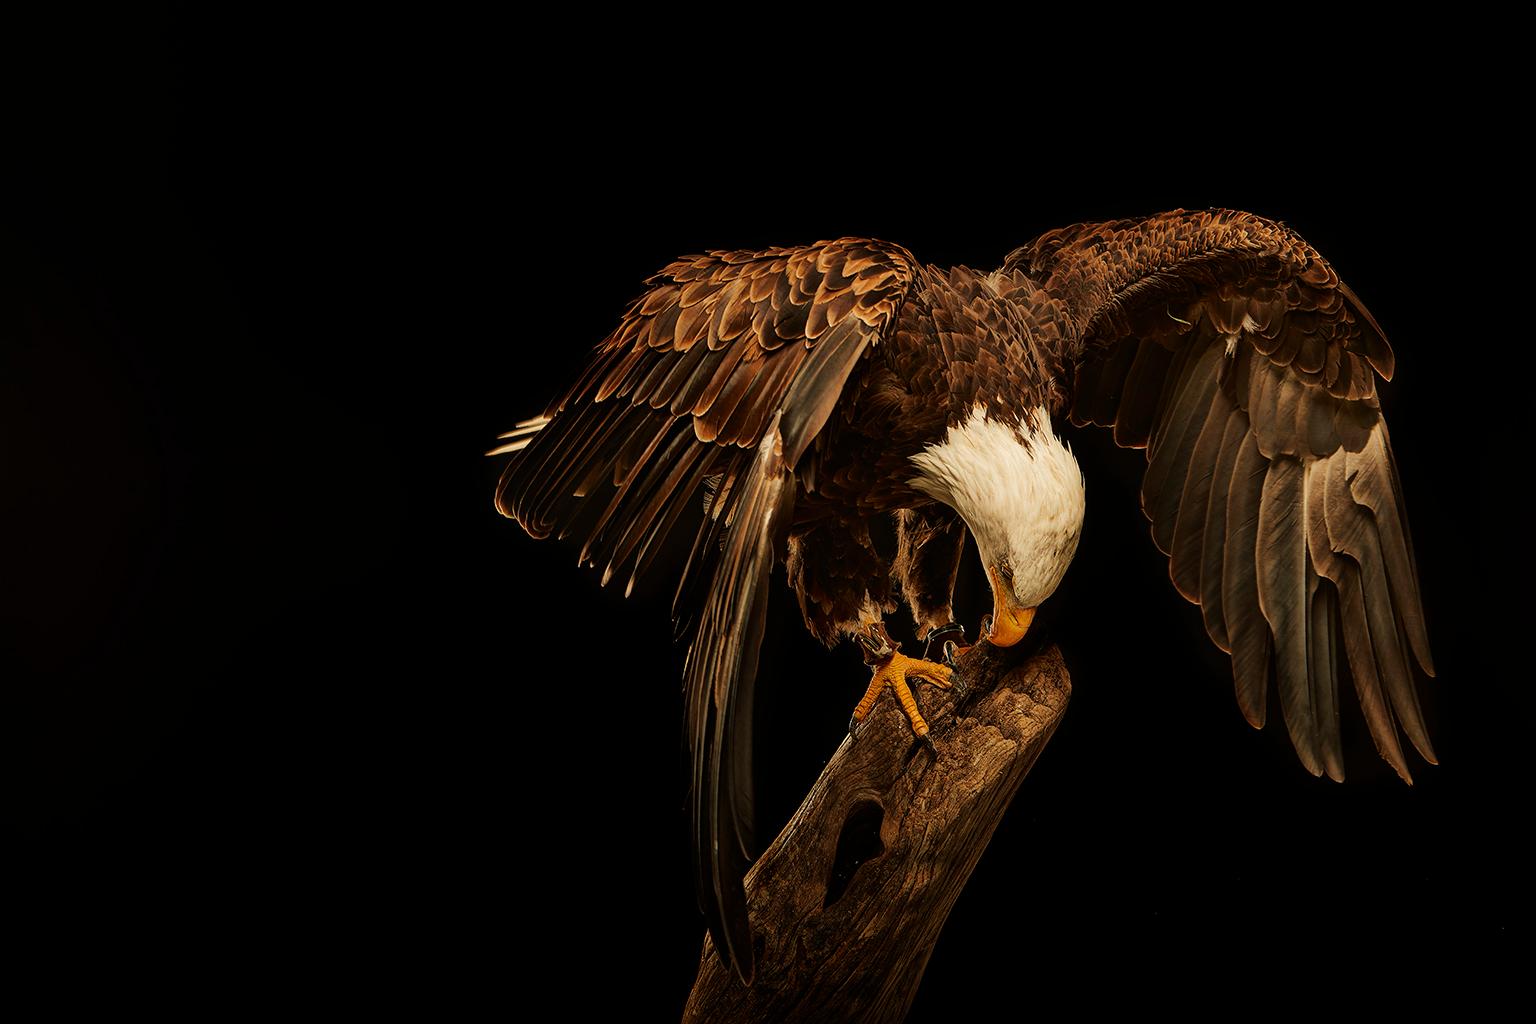 Chris Gordaneer Color Photograph – Birds of Prey Bald Eagle Nr. 18